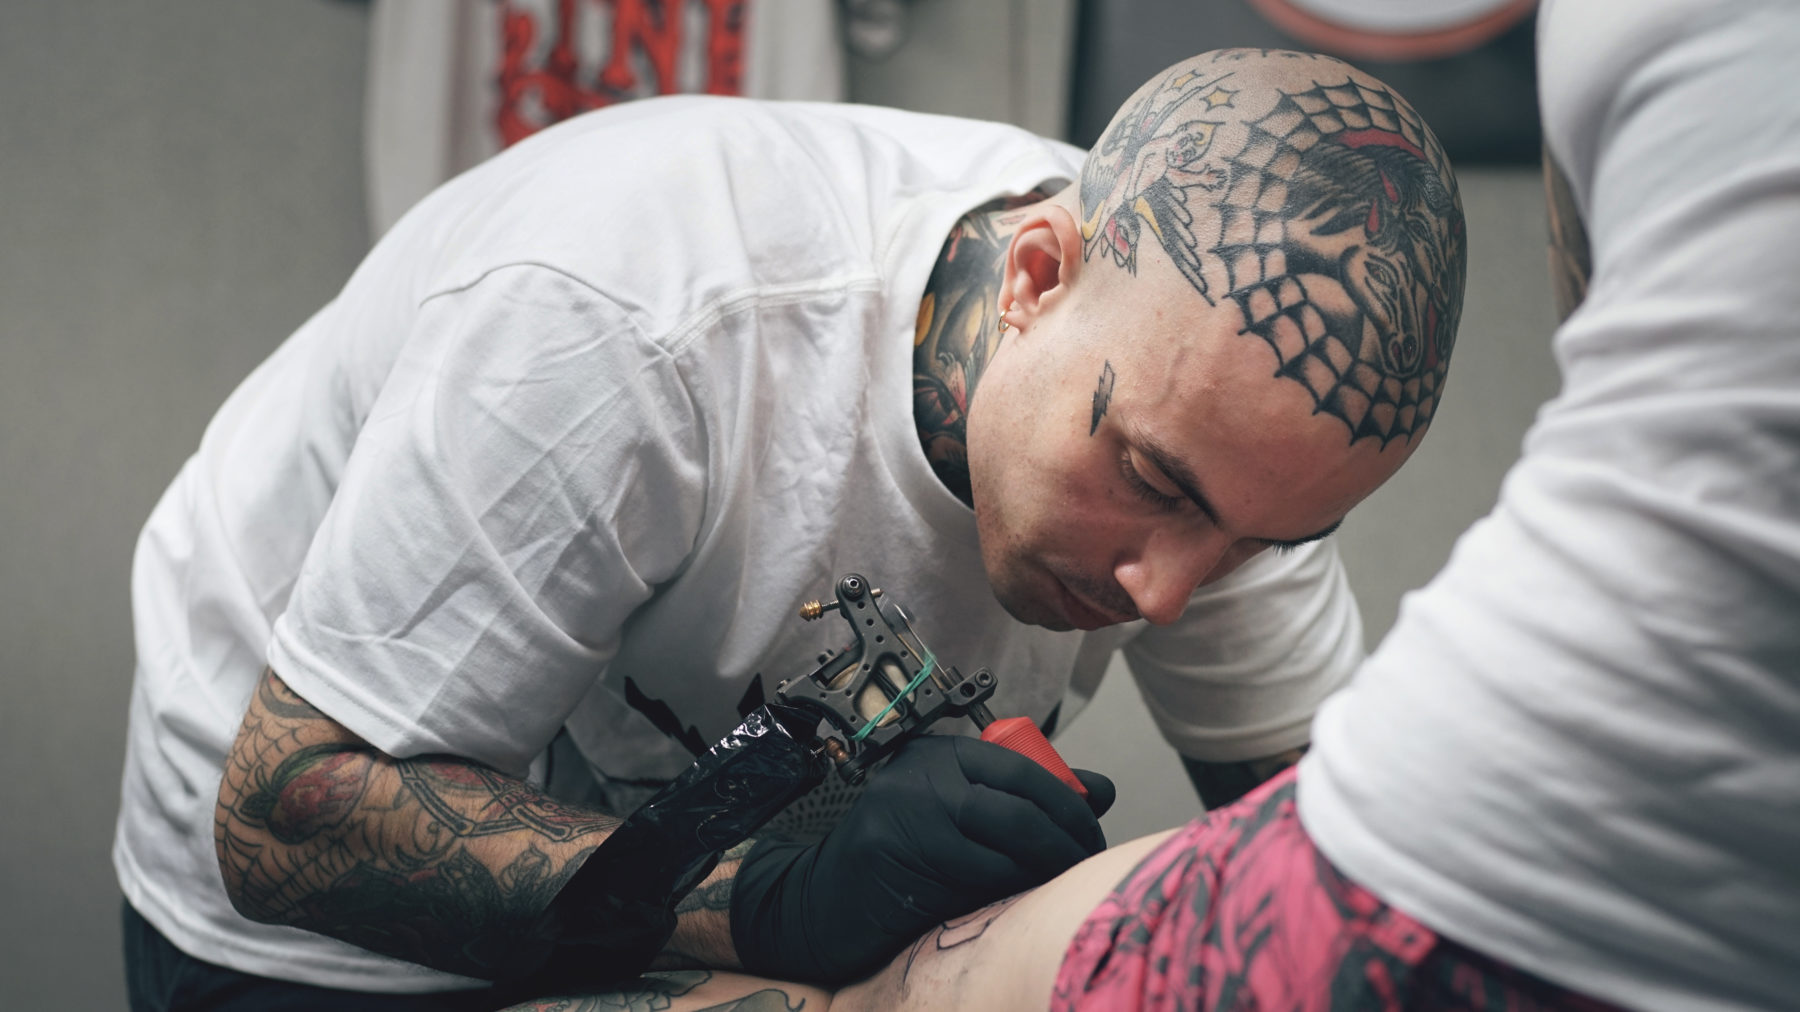 Diego - Artist Interview | Big Tattoo Planet